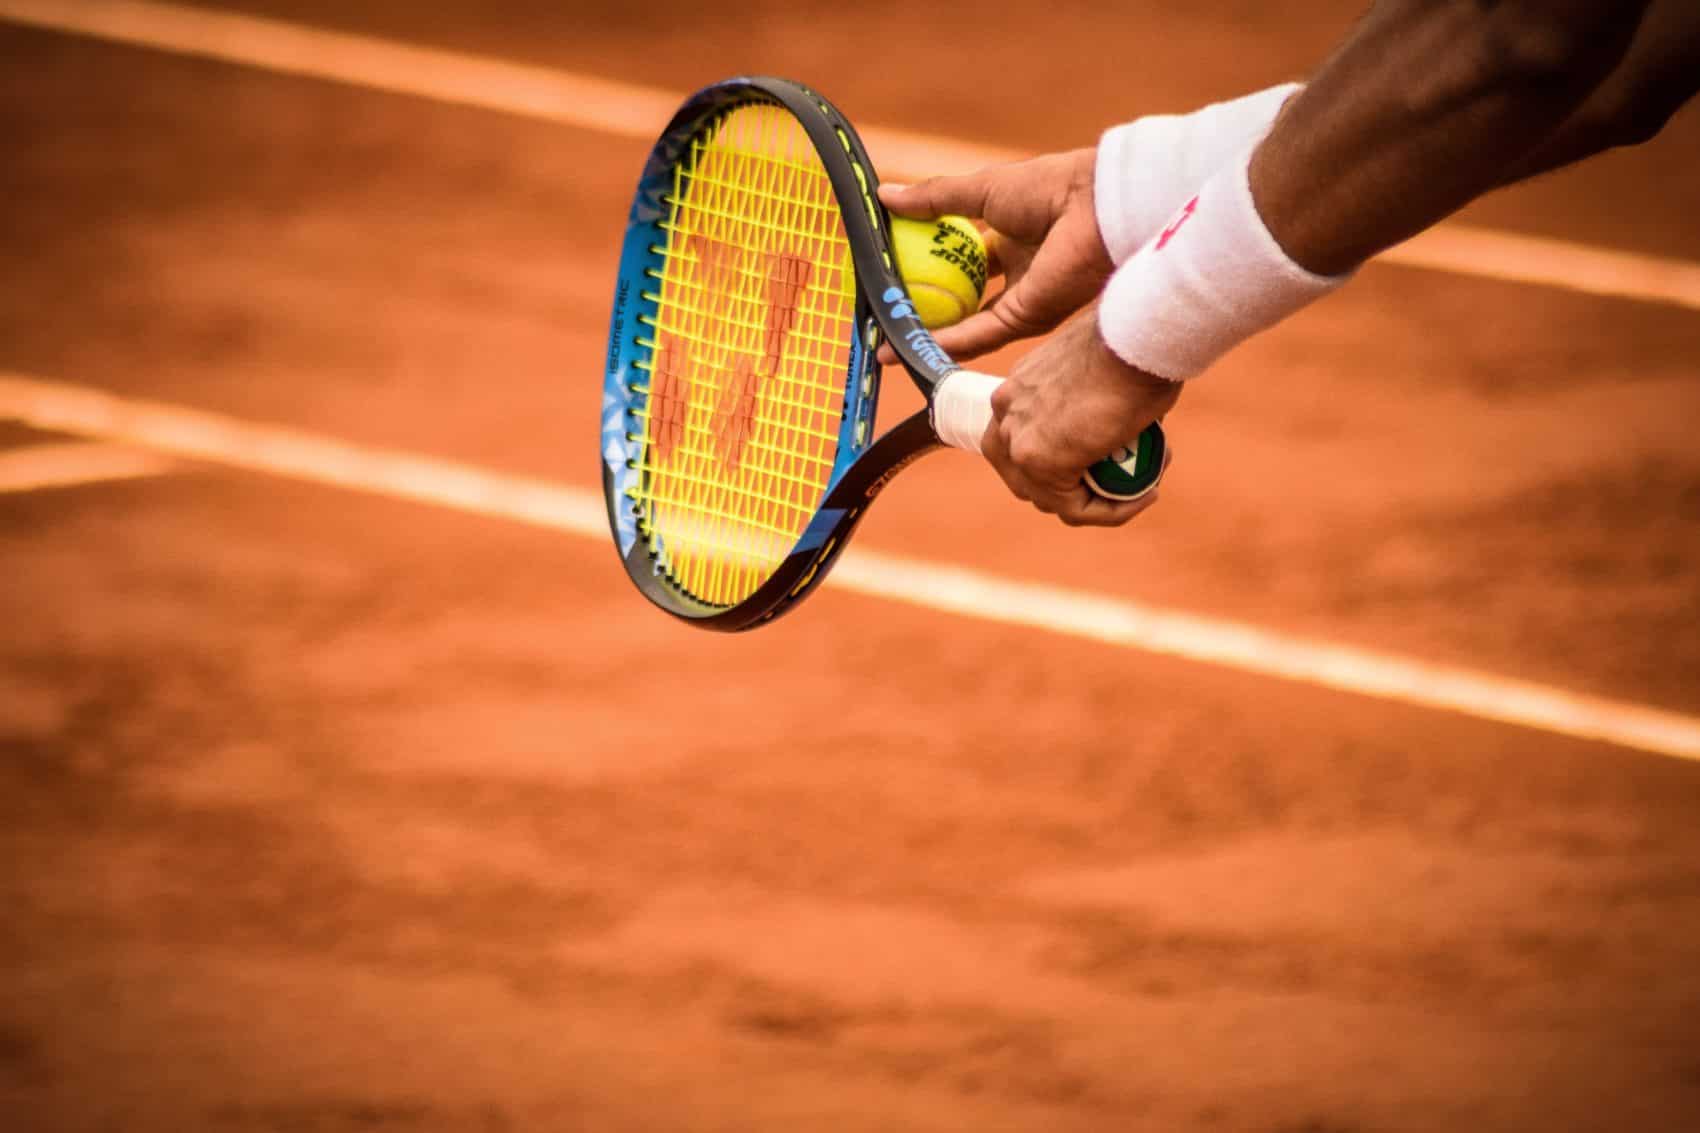 Rund 120 Nachwuchstennisspieler im Alter zwischen 14 und 18 Jahren werden beim 37. Panaceo Junior Tennis Cup 2019 in Villach antreten.